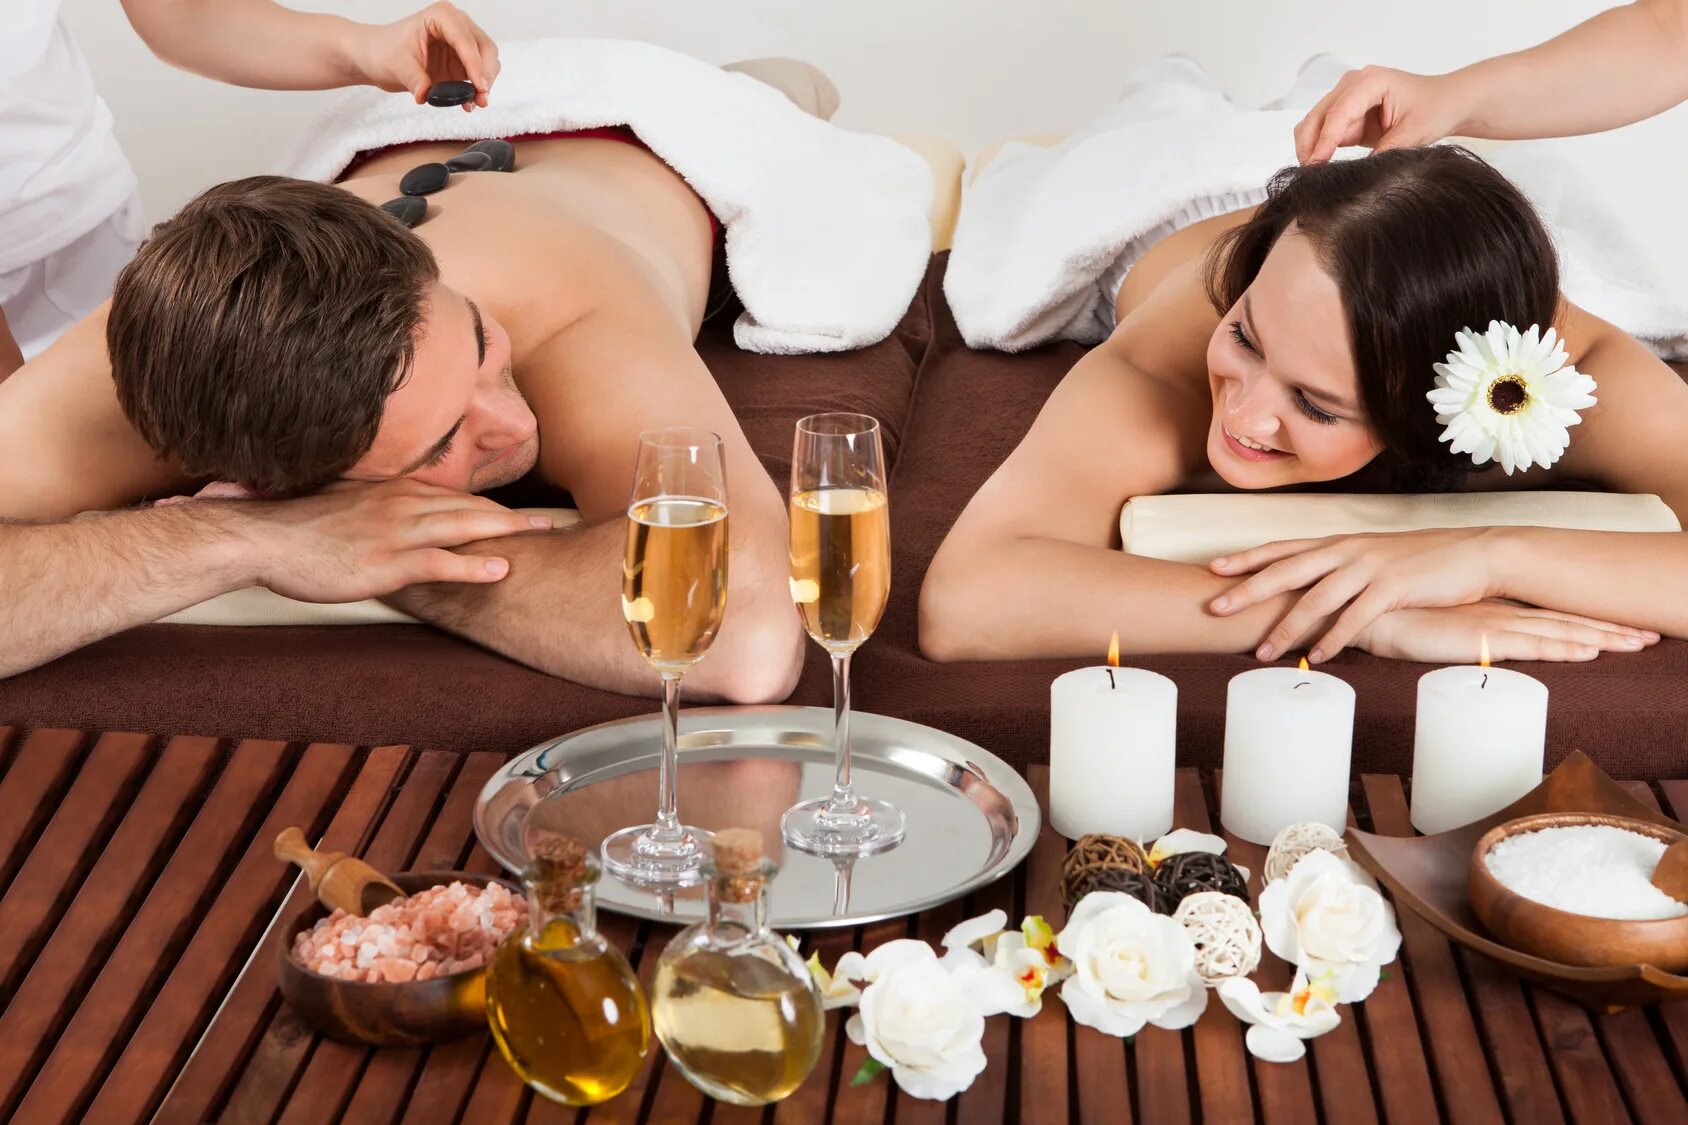 Couple massage. Спа для двоих. Романтический массаж для двоих. Спа для пары. Романтическое спа для двоих.